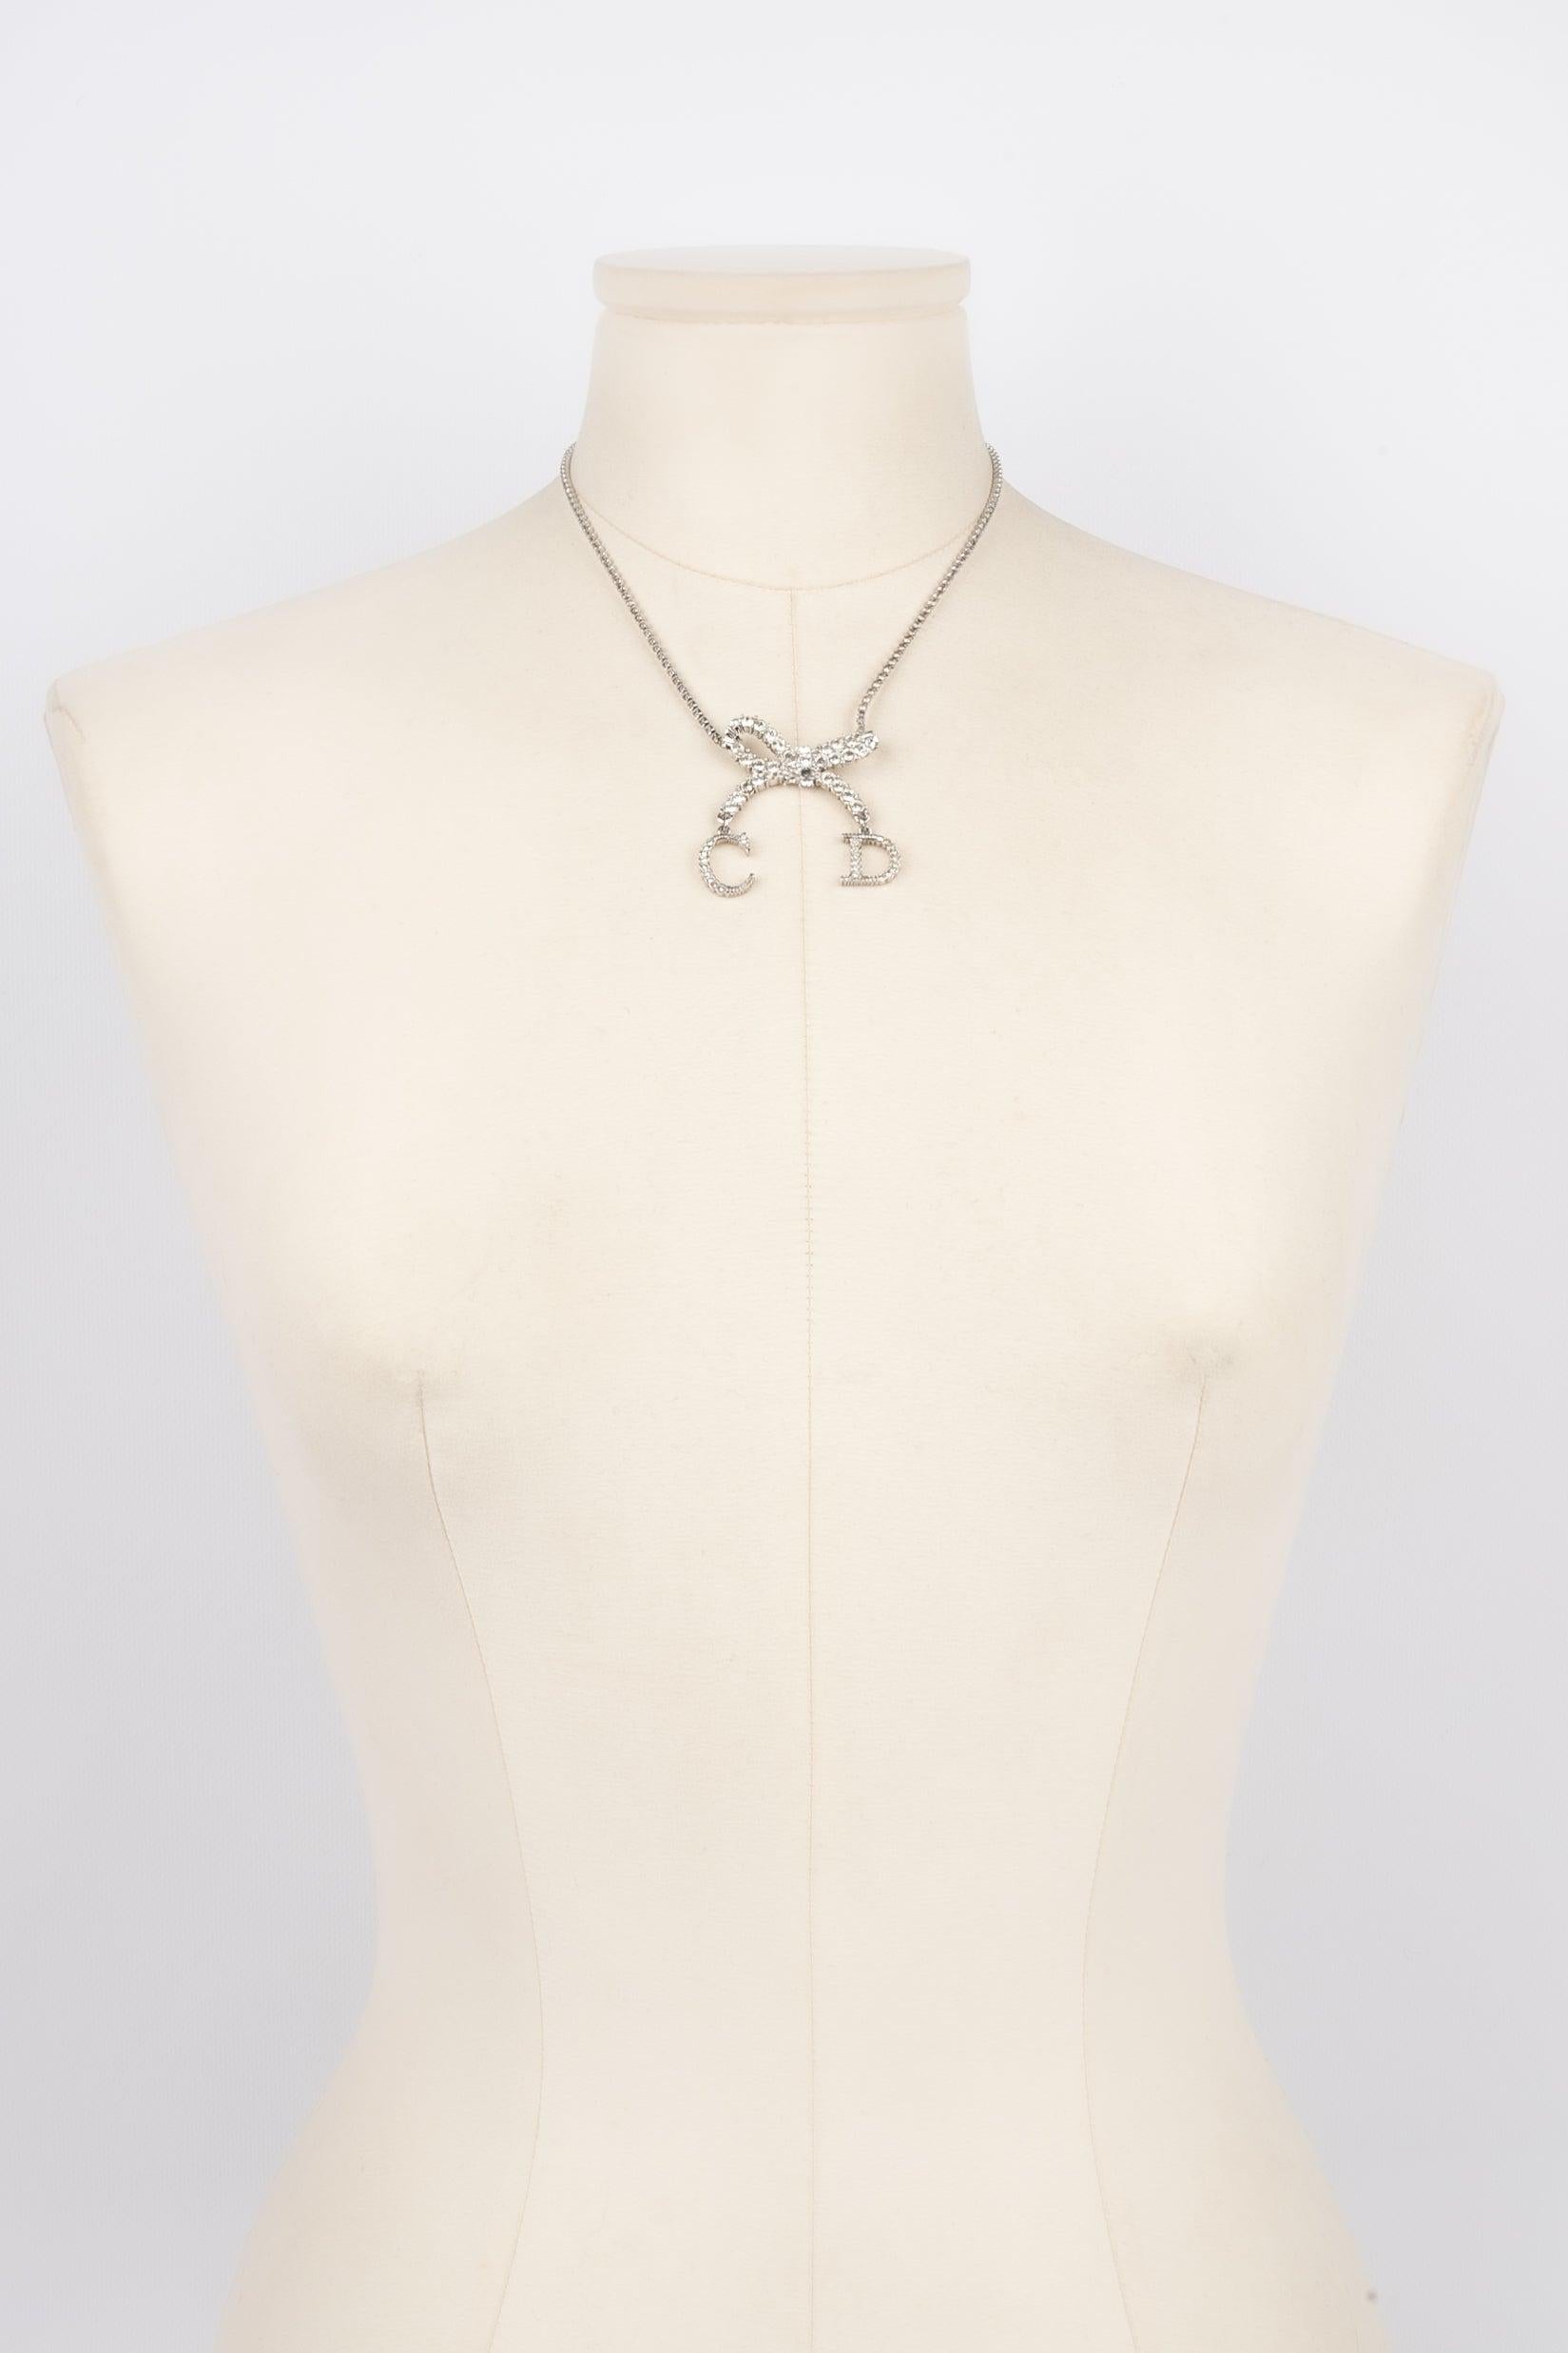 Dior - (Made in France) Kurze Halskette aus silbernem Metall, verziert mit Strasssteinen. Schmuckstücke, die unter der künstlerischen Leitung von John Galliano entworfen wurden.

Zusätzliche Informationen:
Zustand: Sehr guter Zustand
Abmessungen: